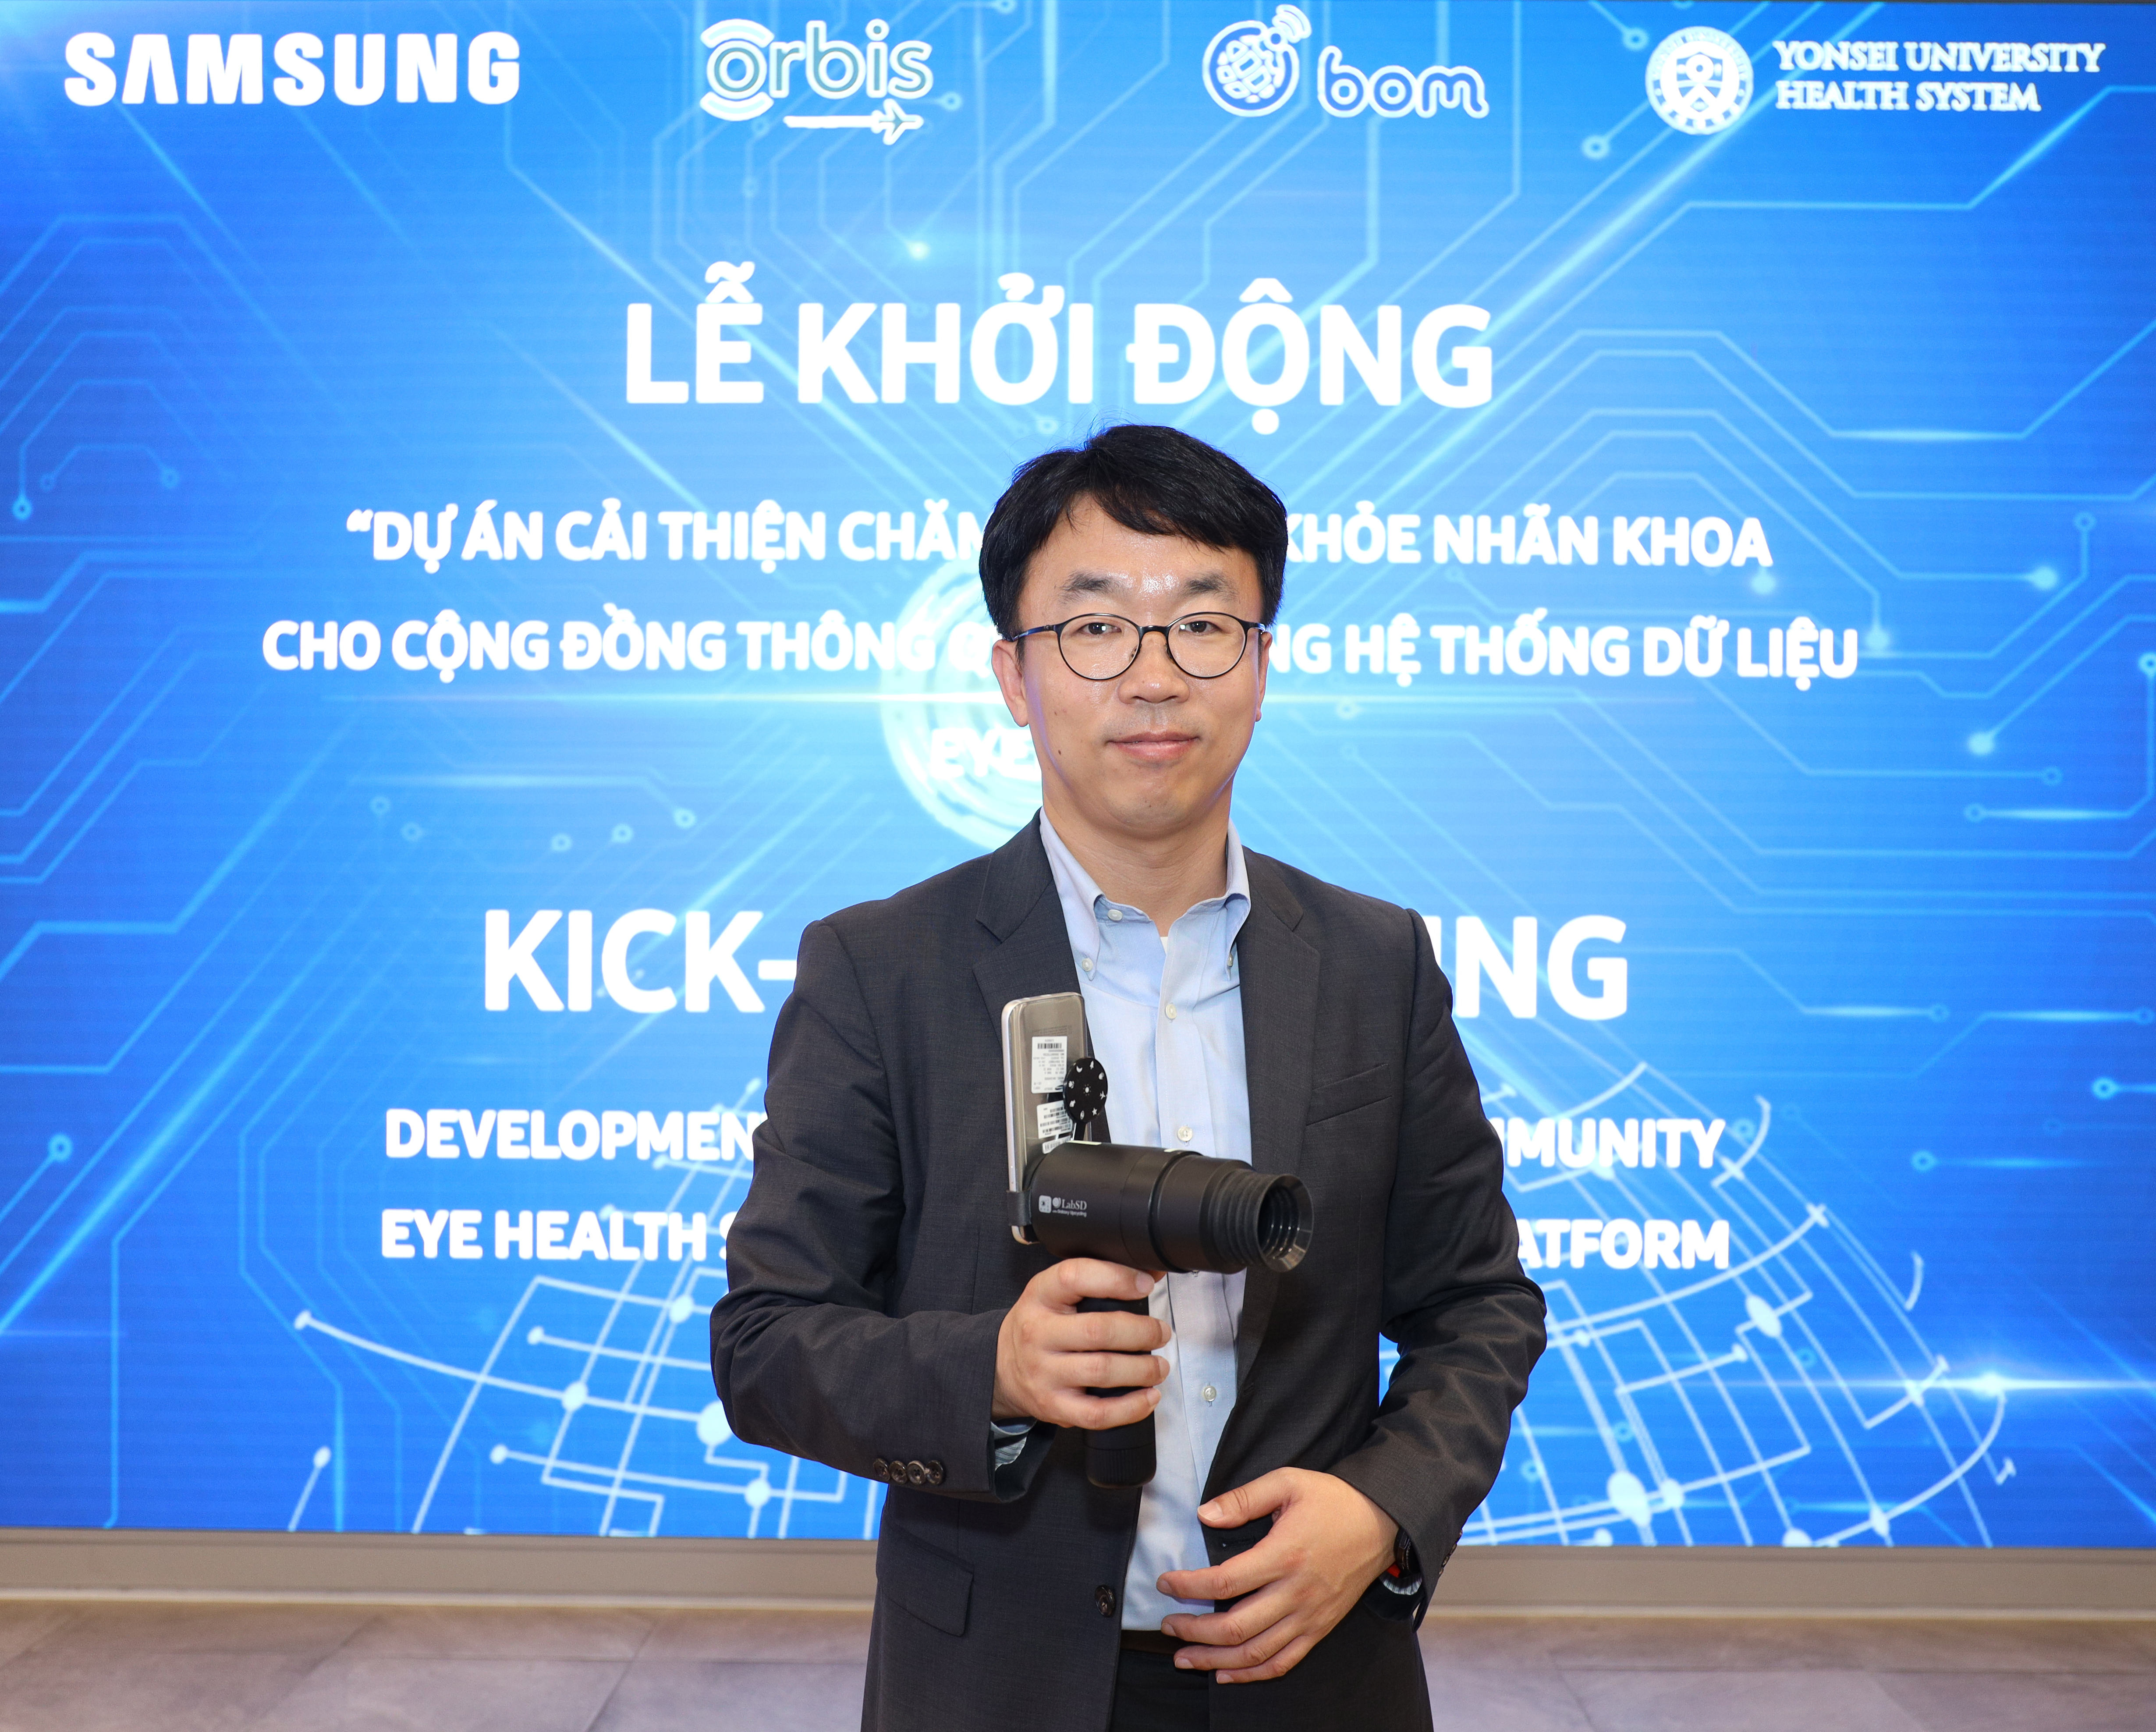 Samsung Vina khởi động “Dự án cải thiện chăm sóc sức khỏe nhãn khoa cho cộng đồng thông qua sử dụng hệ thống dữ liệu EYELIKE” tại Khu vực phía Nam